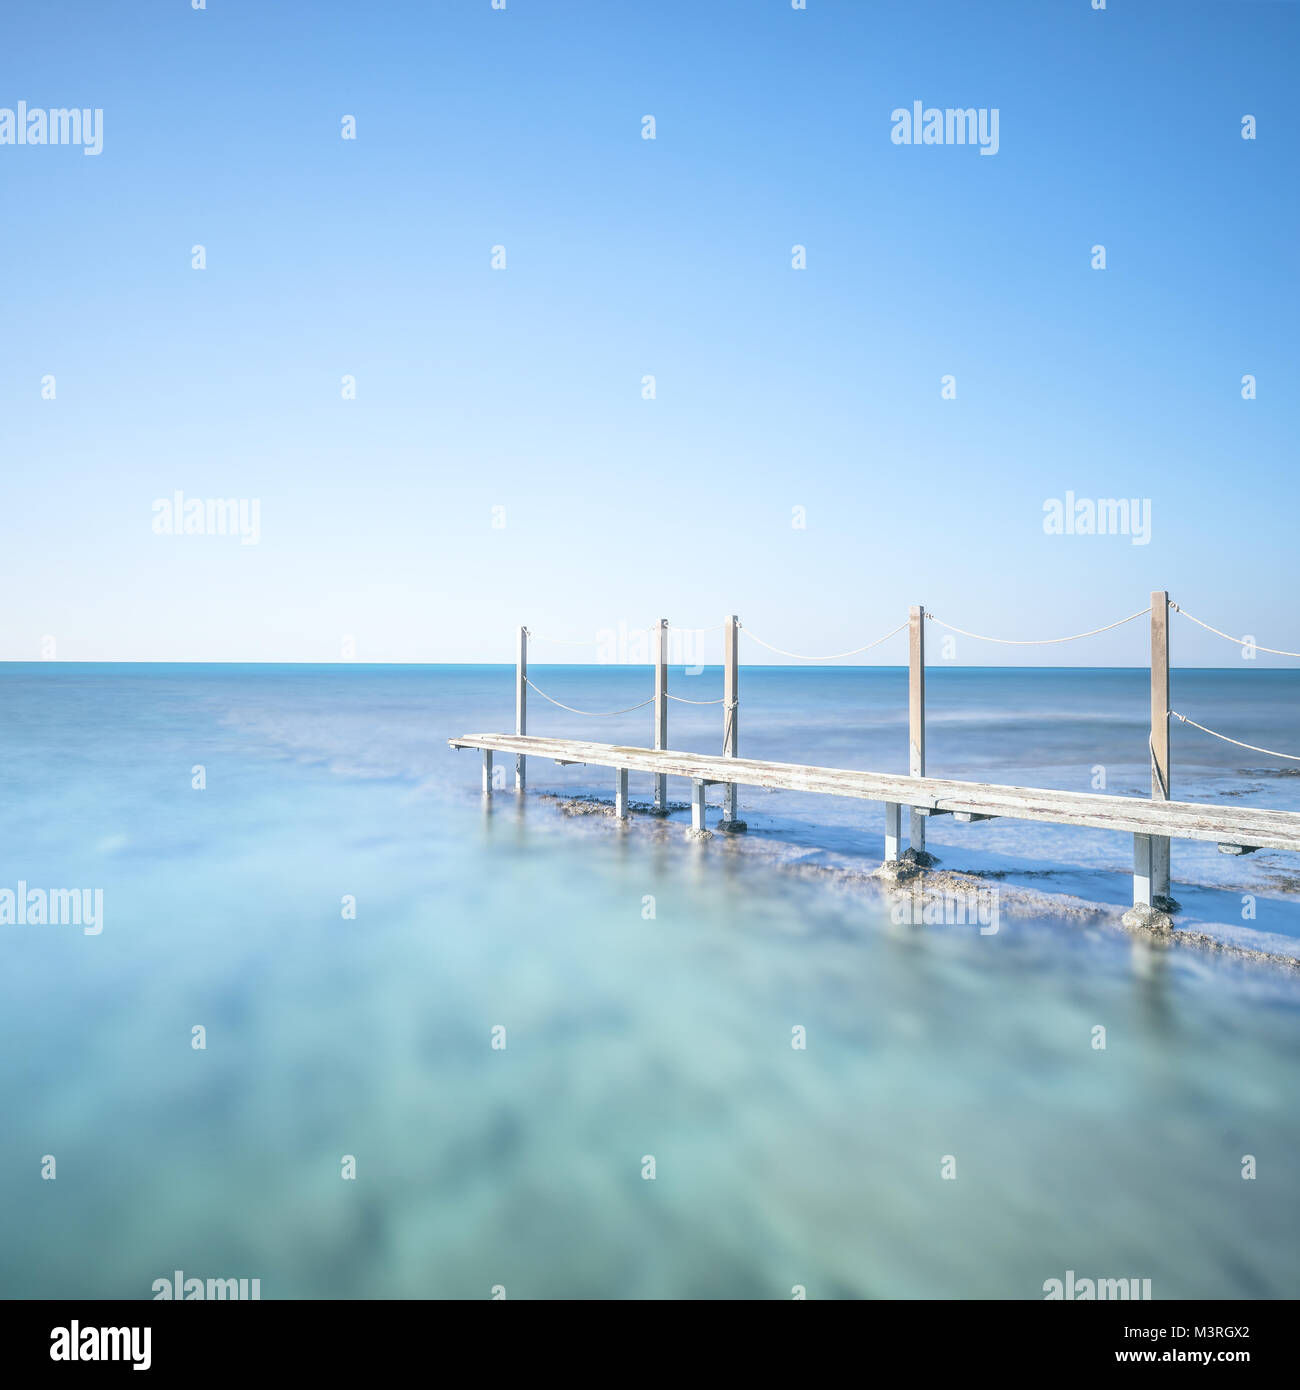 Holzsteg oder Catwalk und Geländer am Meer Wasser. Fotos mit langer Belichtungszeit. Stockfoto